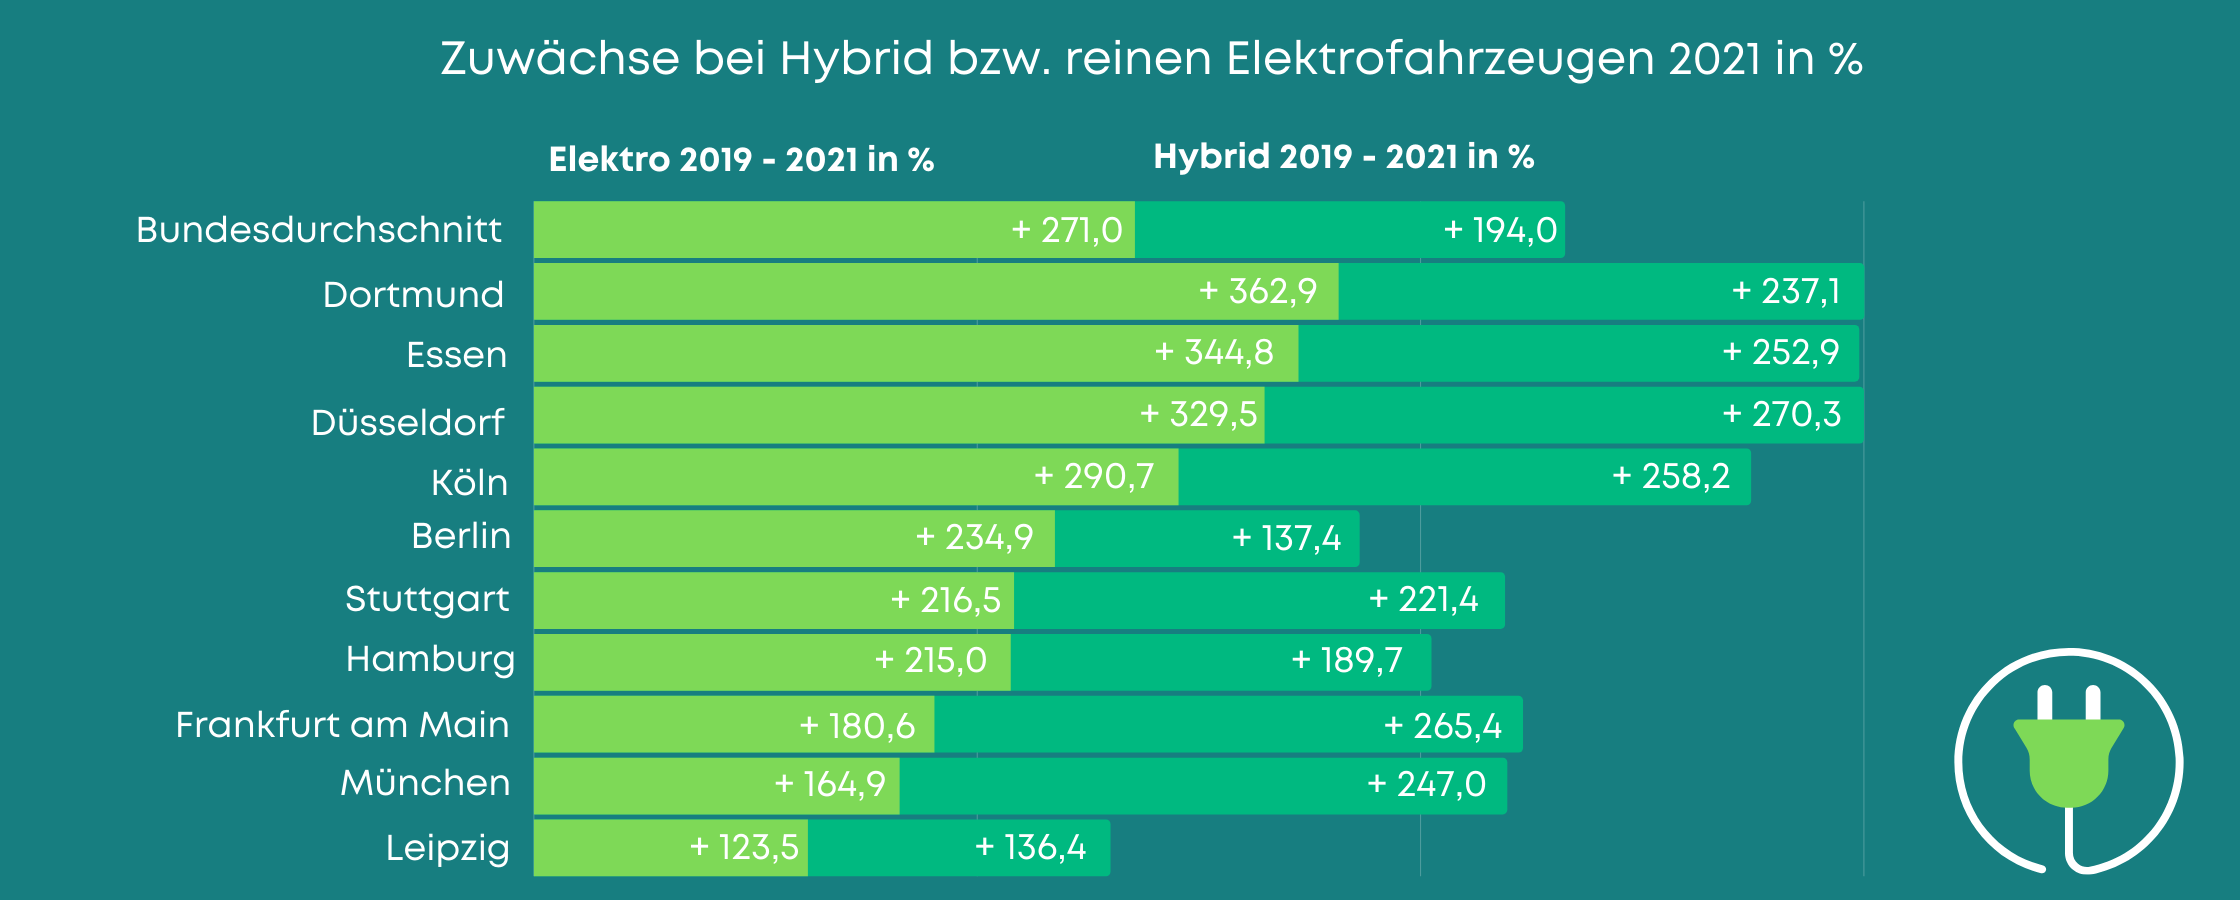 Zuwachsraten bei Hybrid bzw. reinen Elektroautos gegenüber 2019 nach den 10 größten Städten Deutschlands